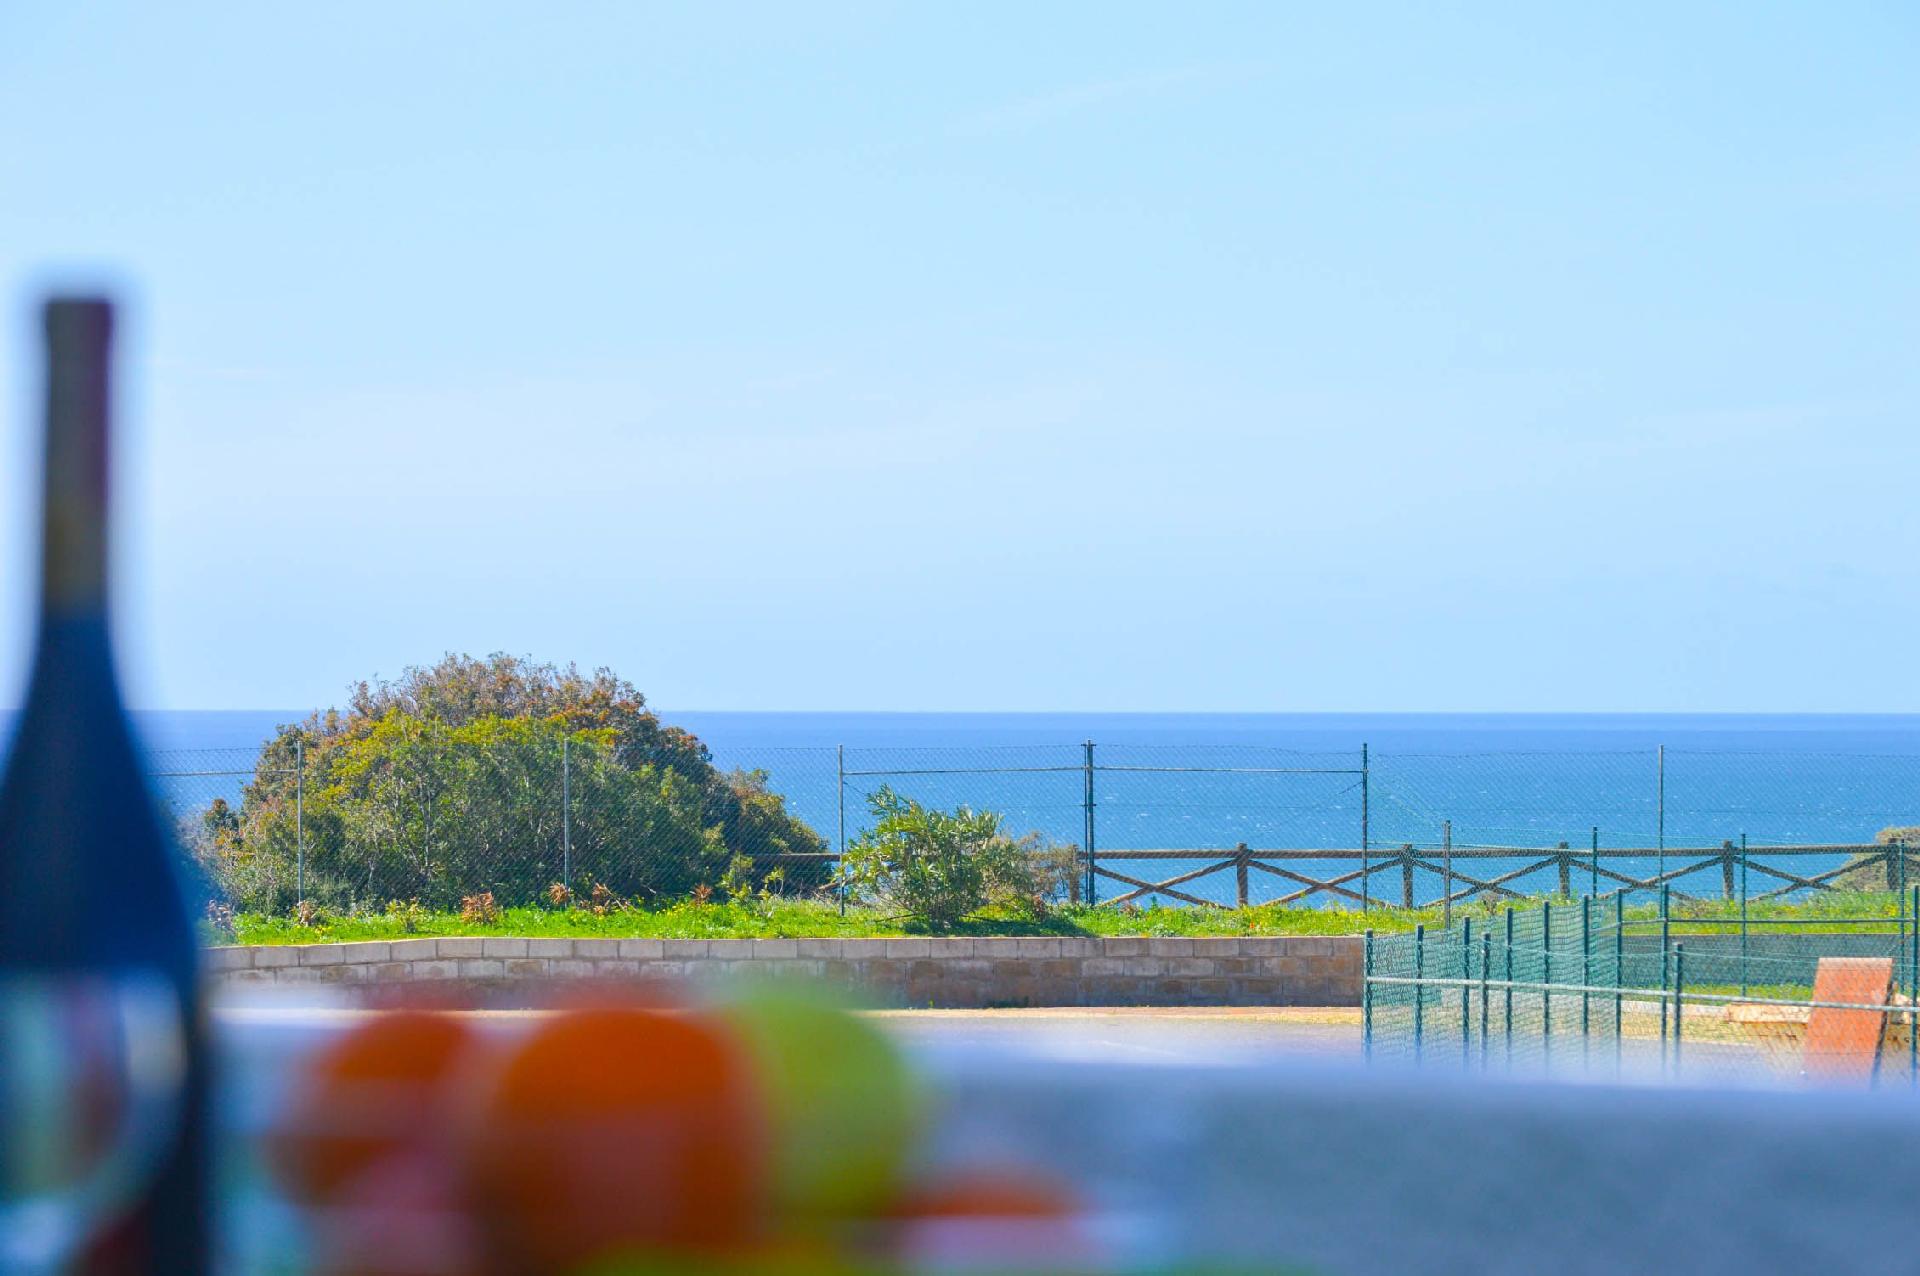 Ferienwohnung mit eigener Terrasse, Meerblick, dir Ferienhaus in Portugal